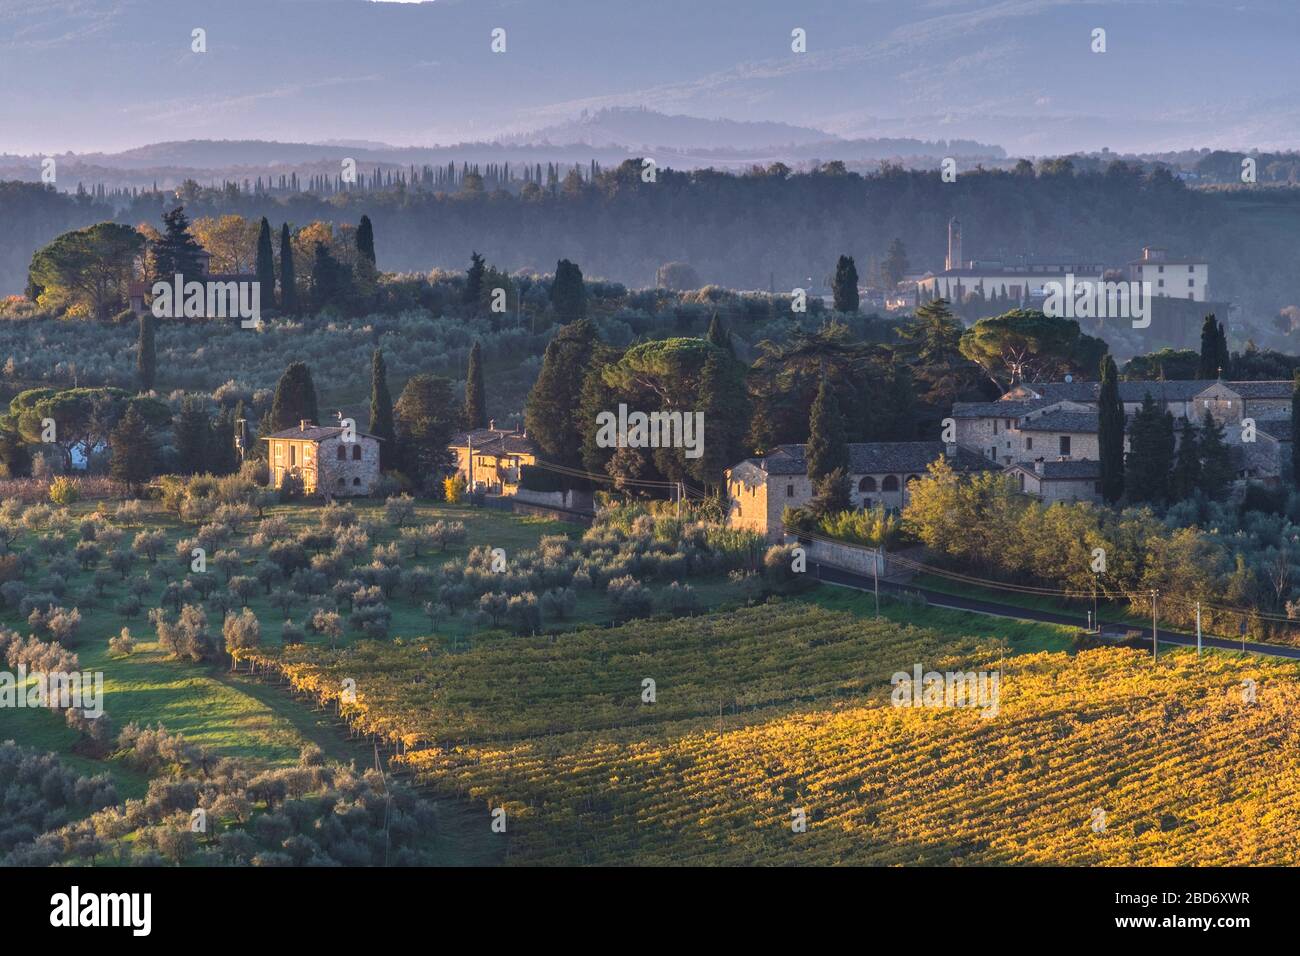 SanGimignano, Tuscany, Italy Stock Photo